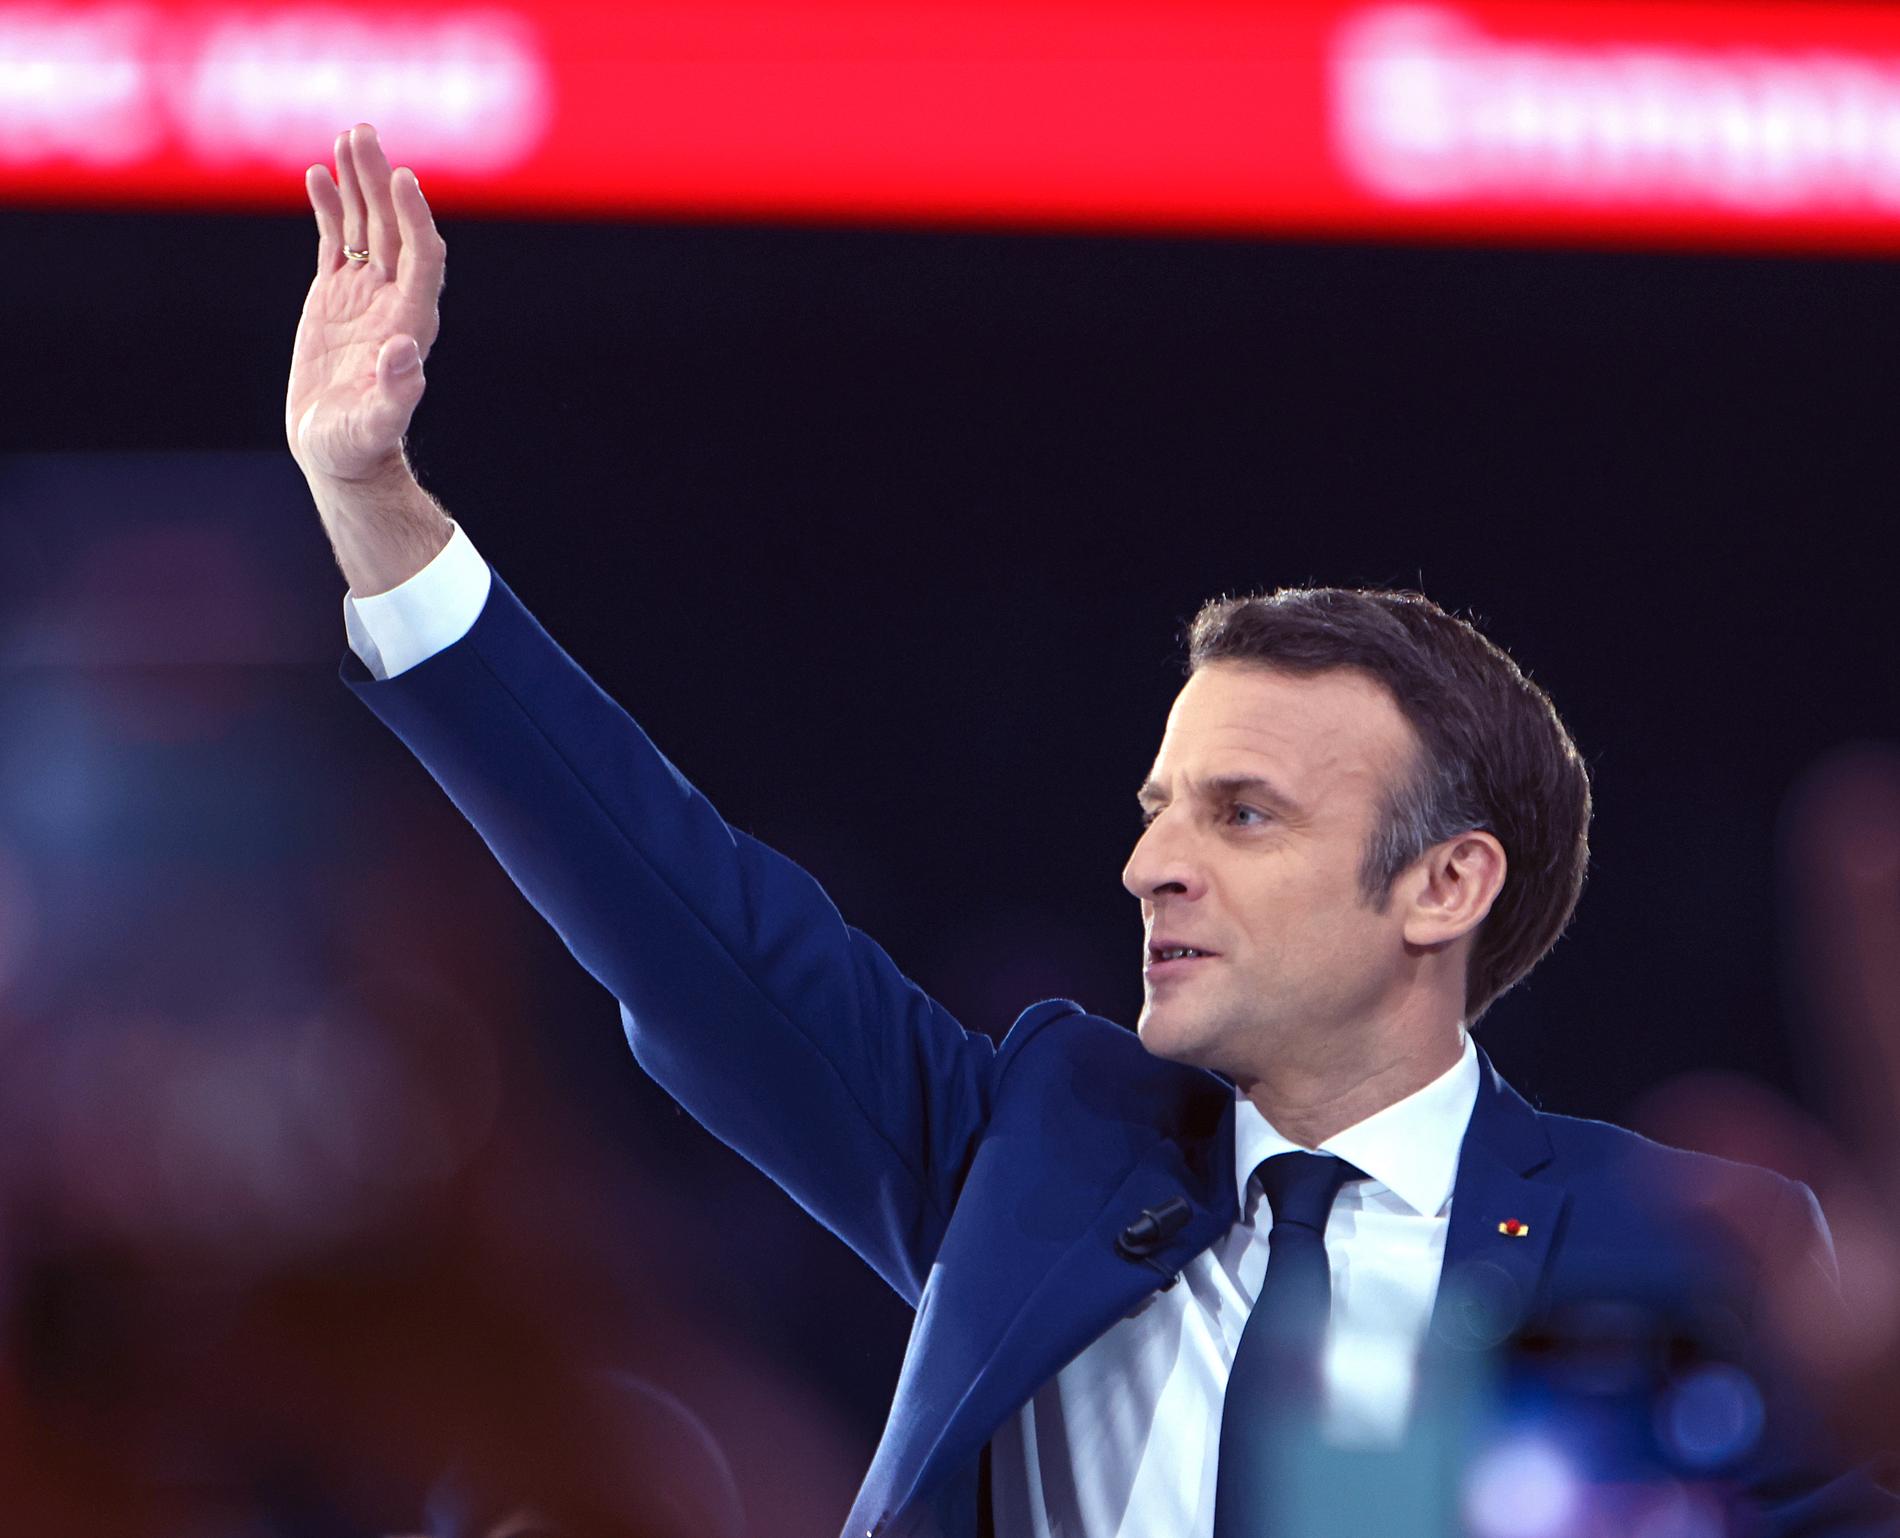 Marginalen mellan Macron och Le Pen var något större än vad de senaste opinionsmätningarna hade visat.